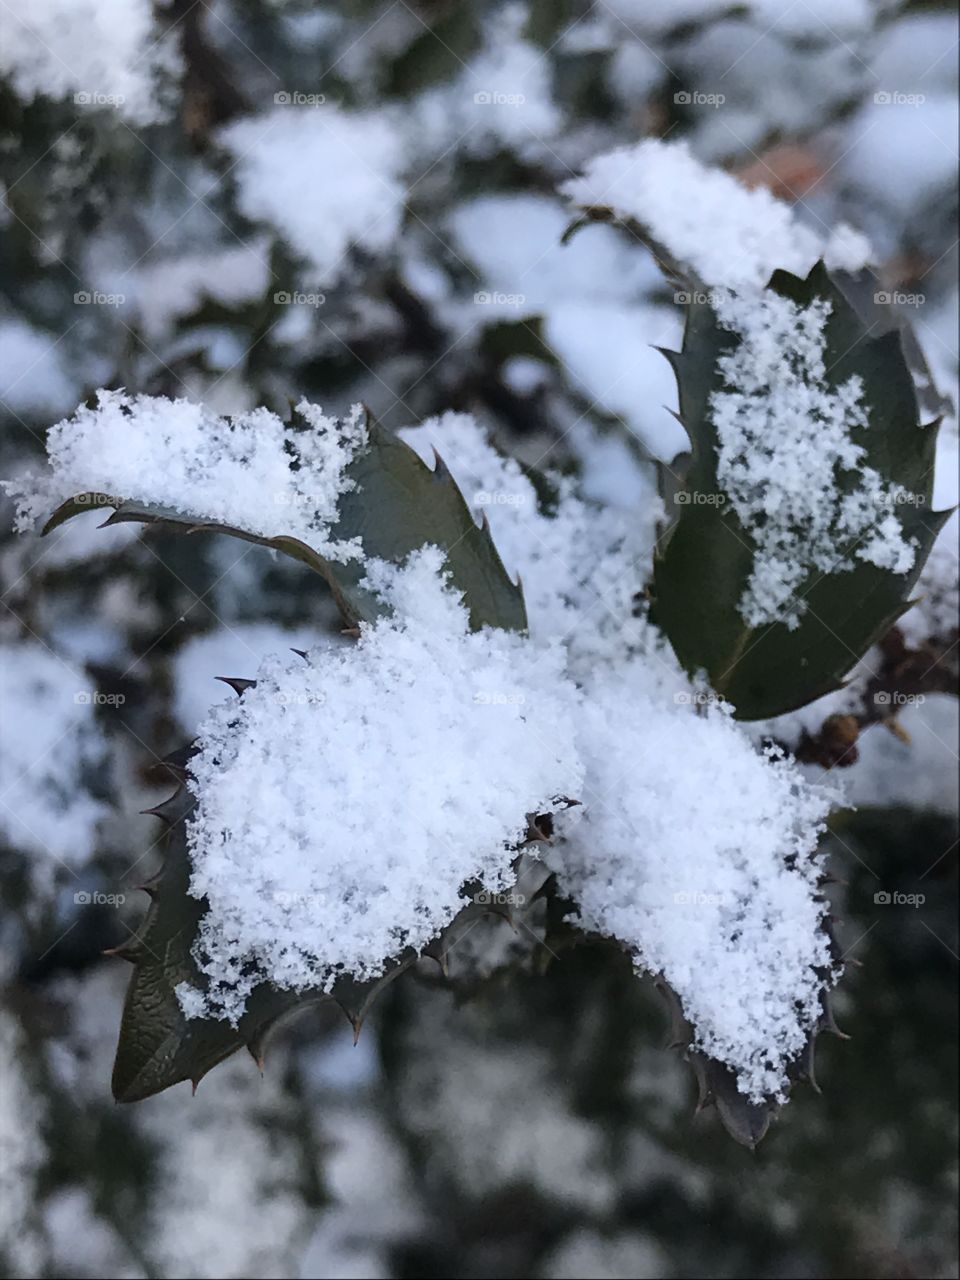 Delicate snowflakes 